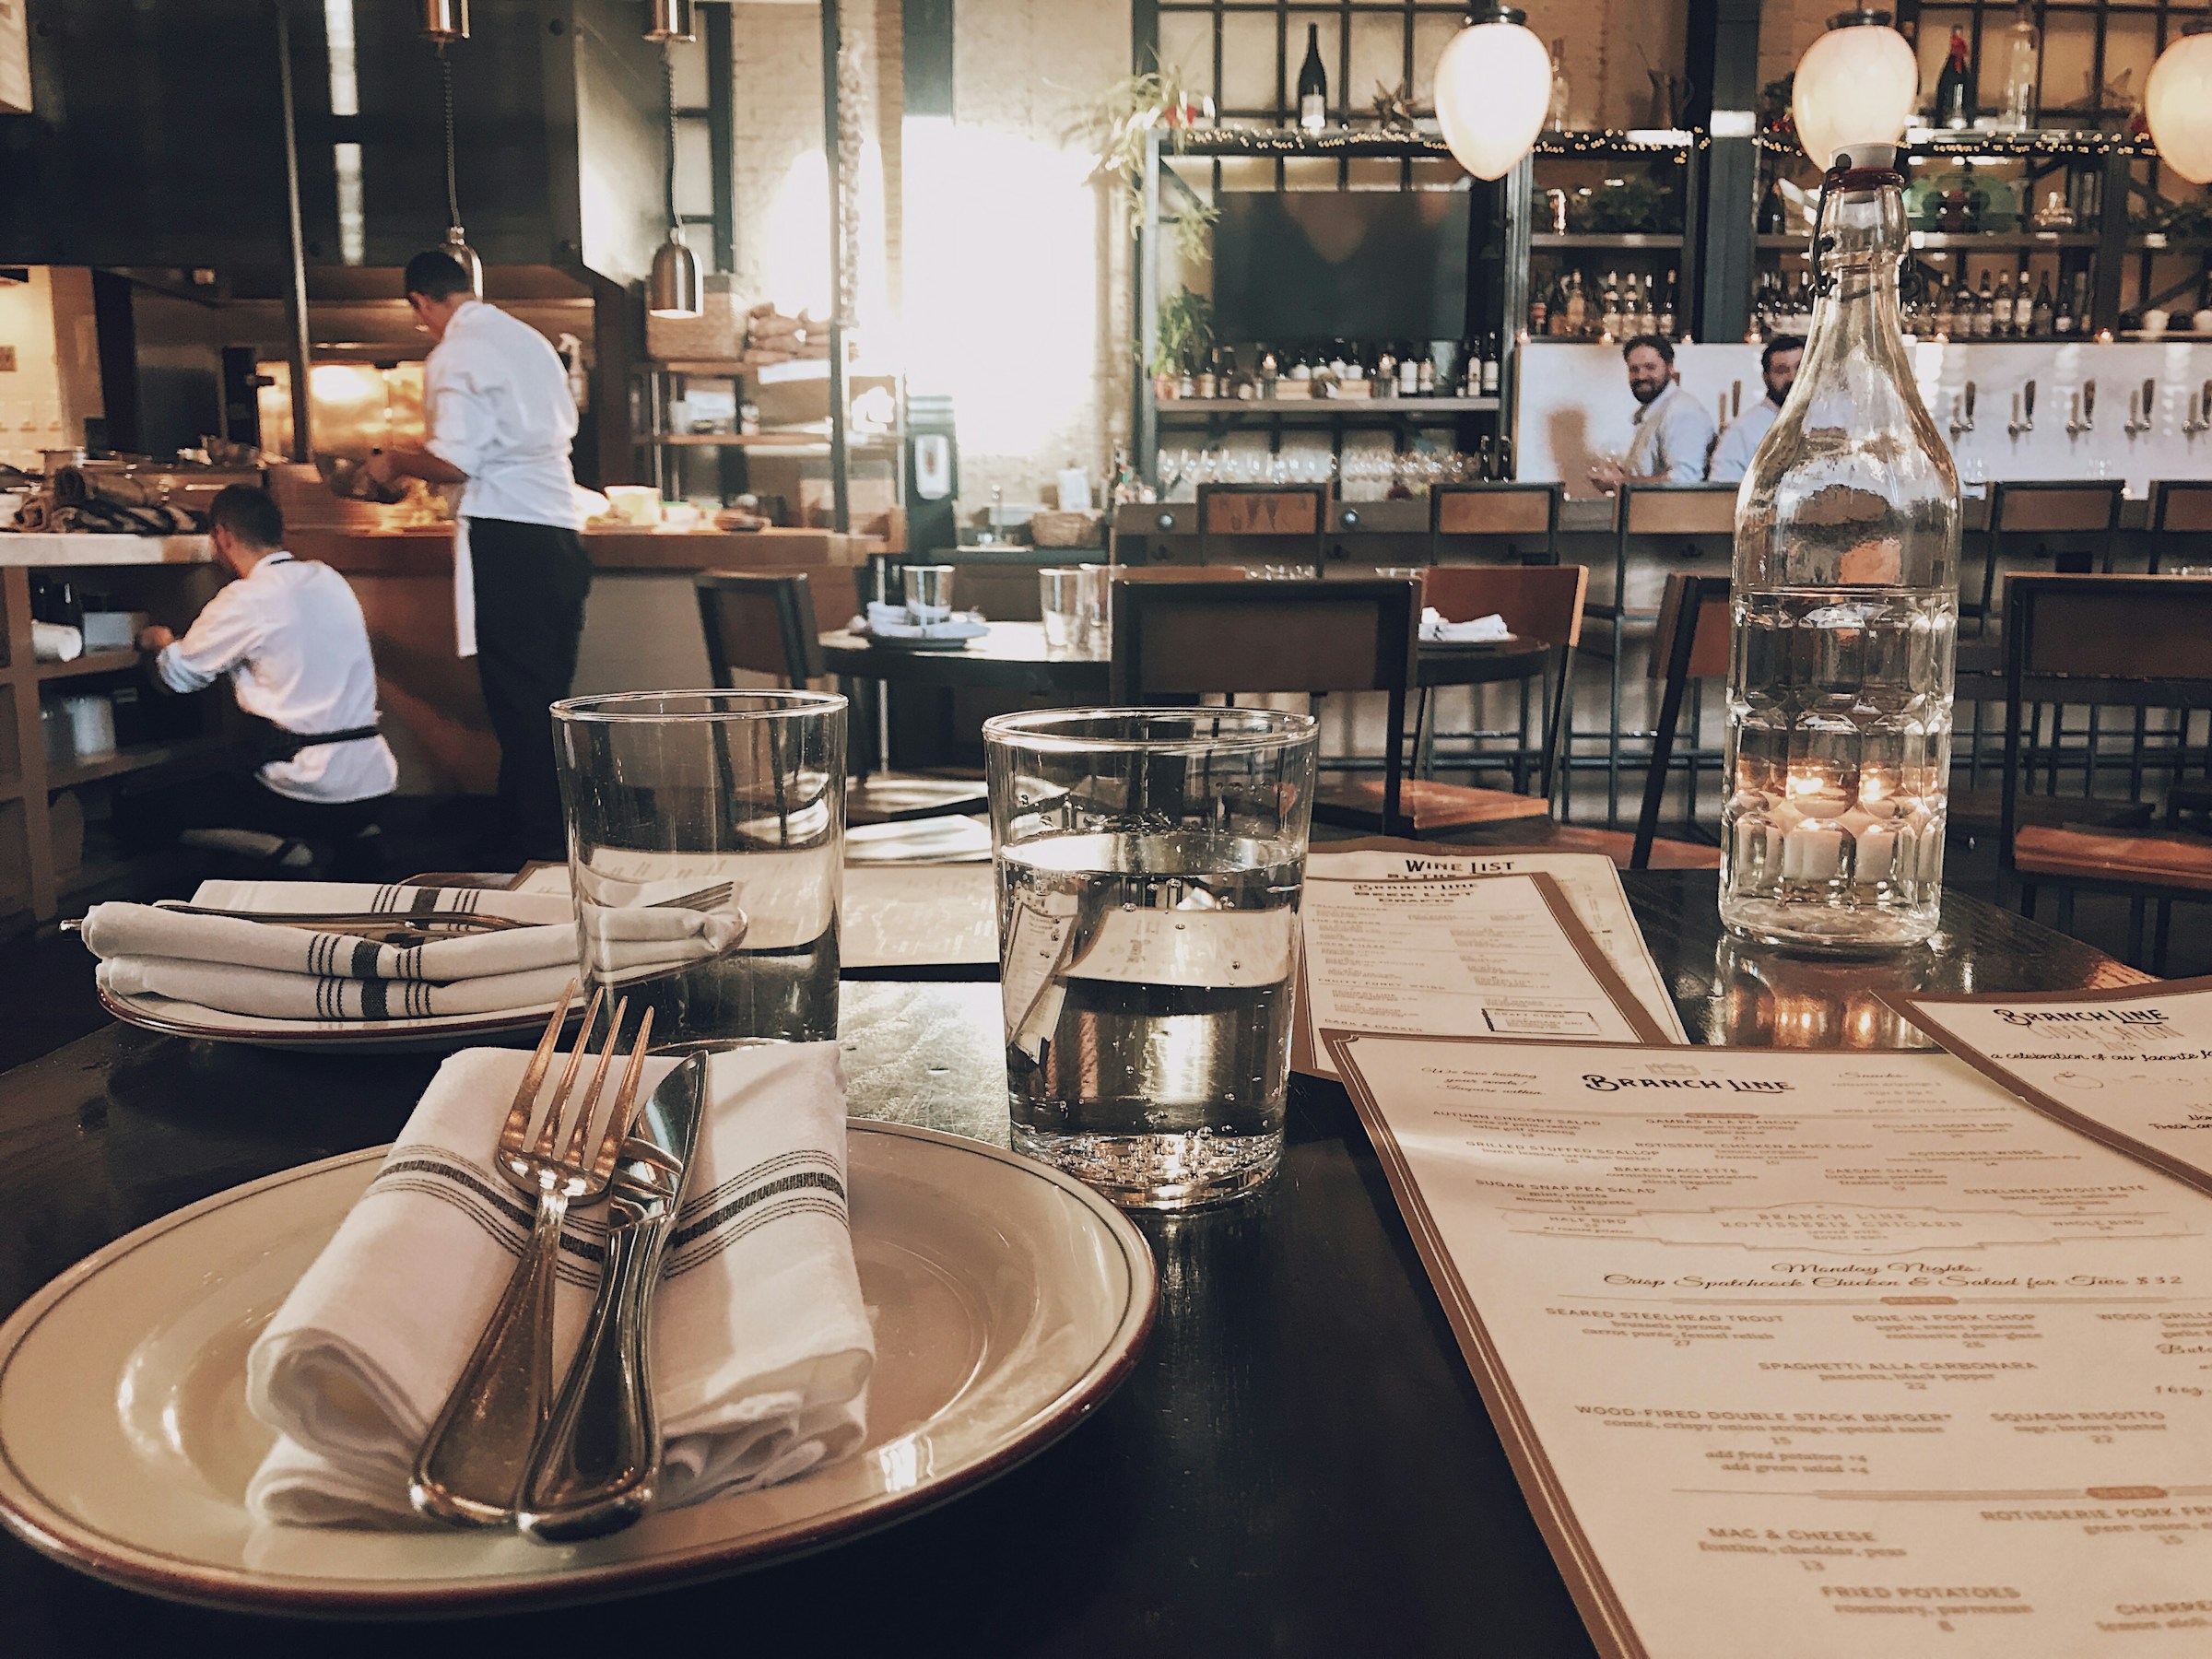 Servicio de mesa en un restaurante | Foto: Unsplash